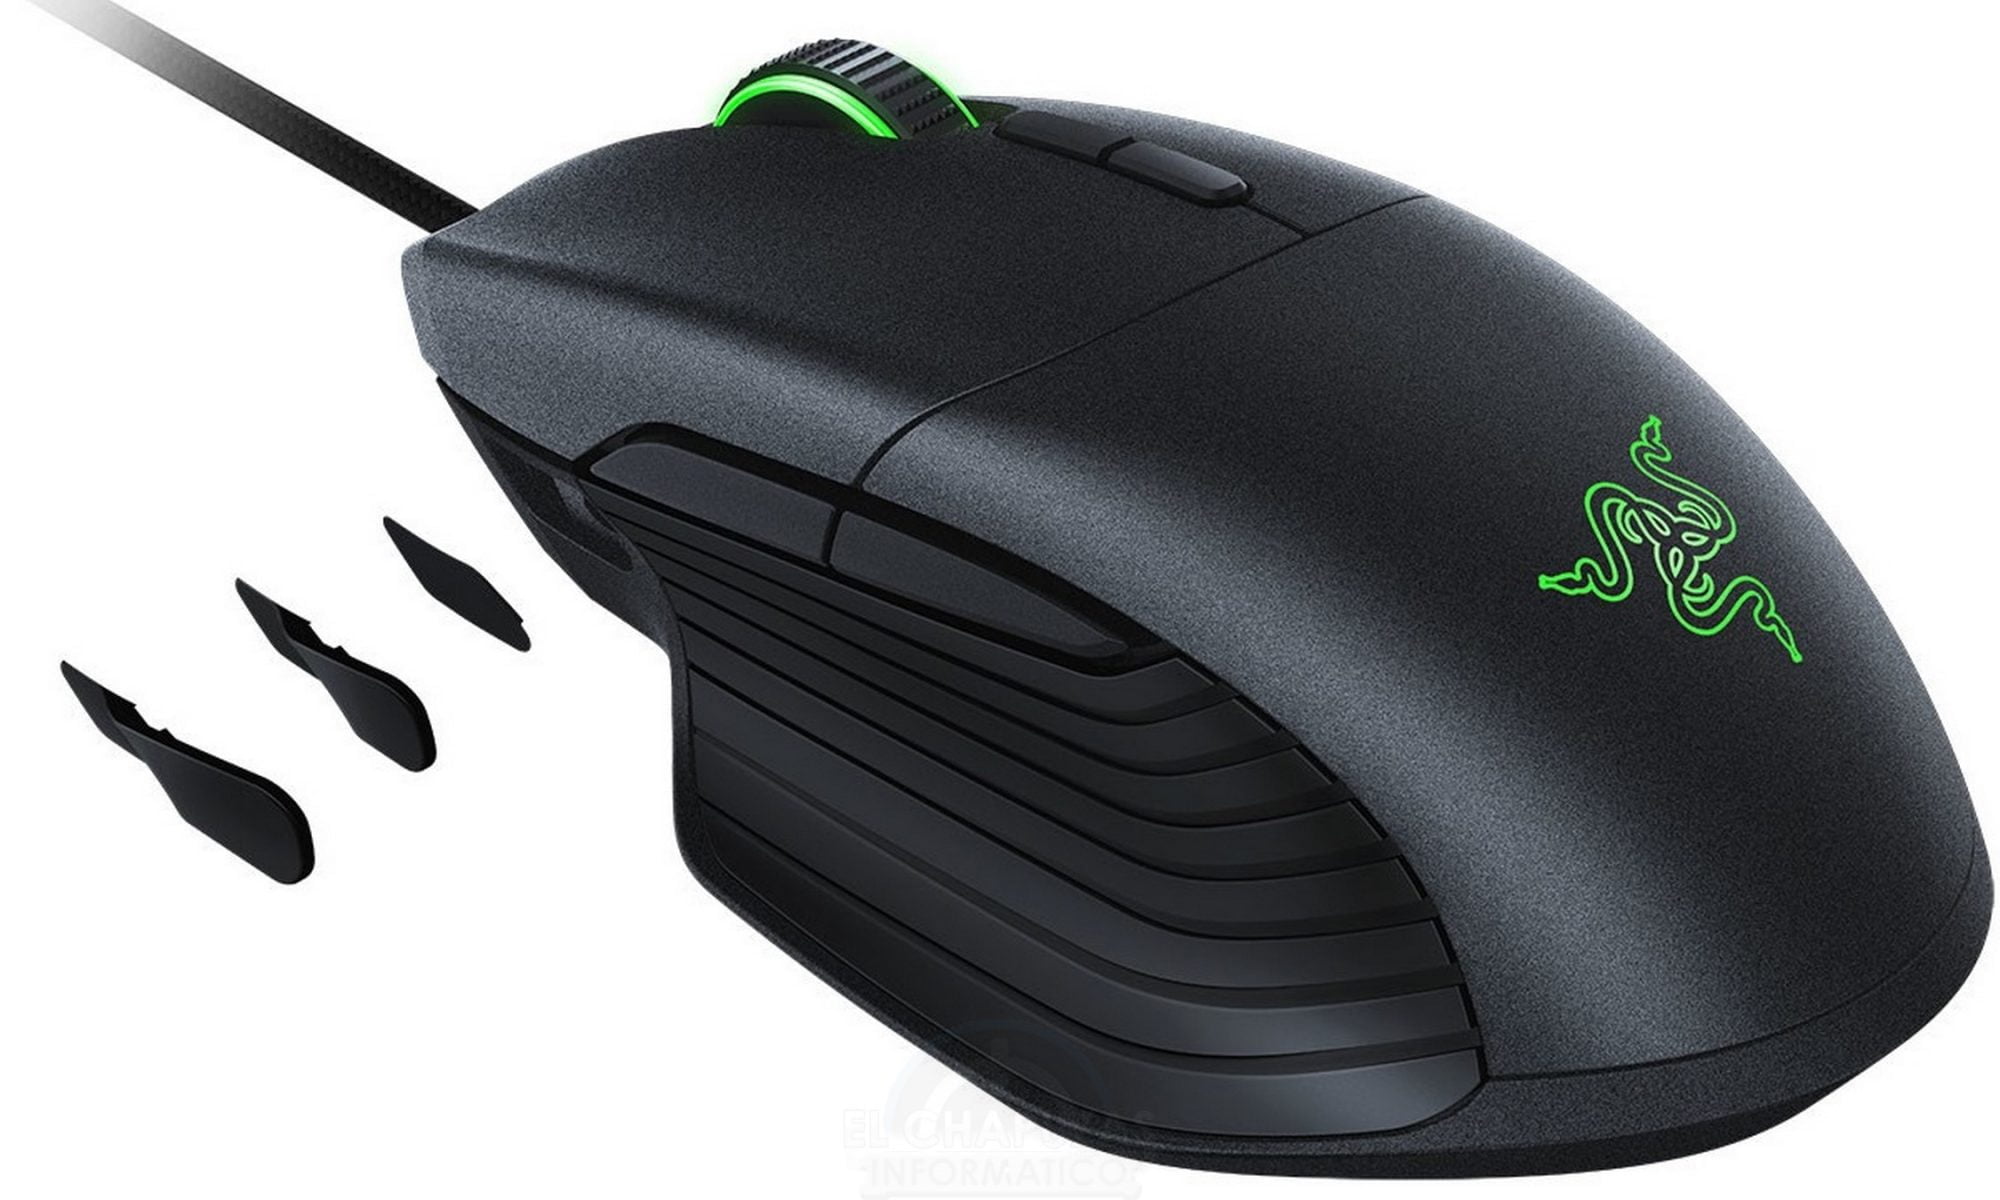 Razer Introduces the Basilisk – Gaming Mouse Designed for CS:GO, Quake, and PUBG